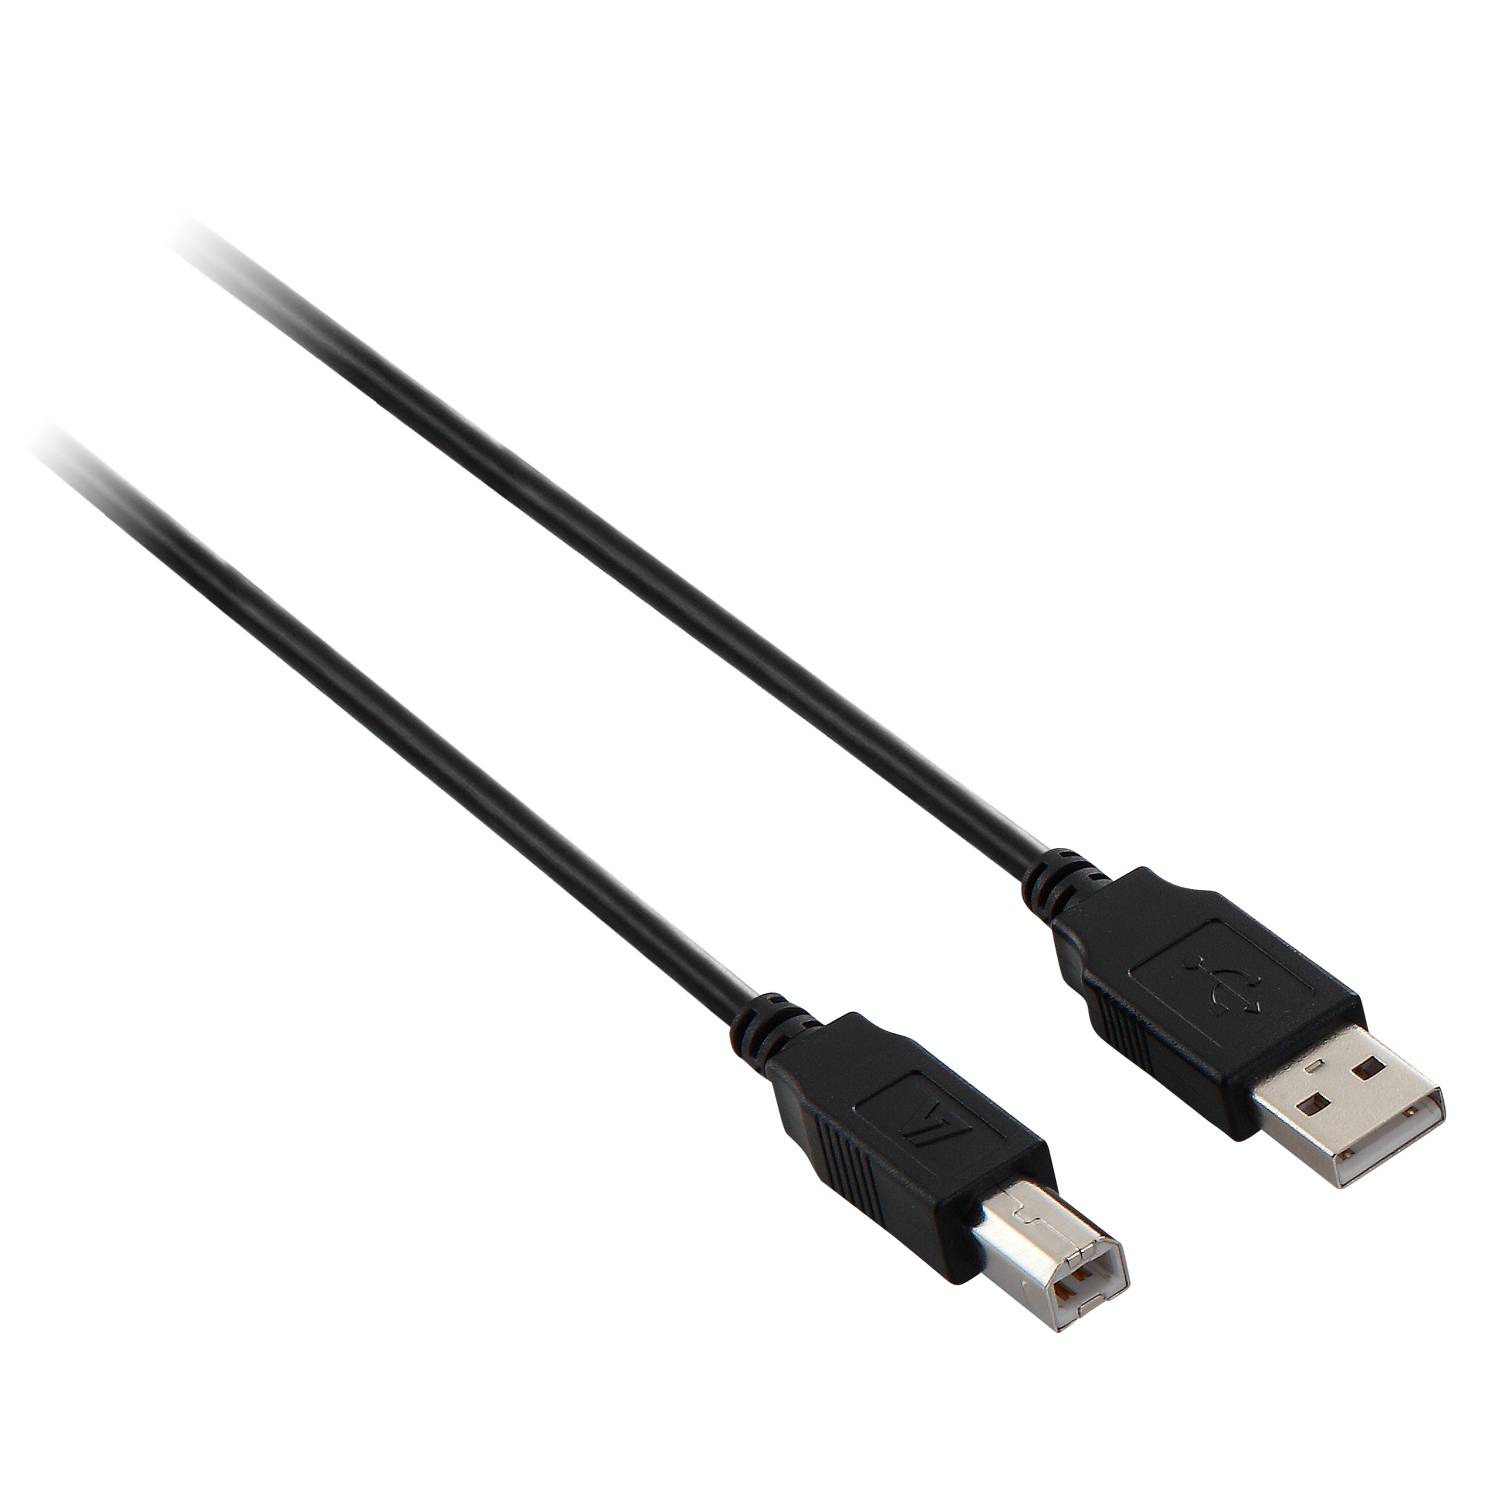 Rca Informatique - Image du produit : USB2.0 A TO B CABLE 3M BLACK DATA CABLE 480MBPS PERIPHERALS